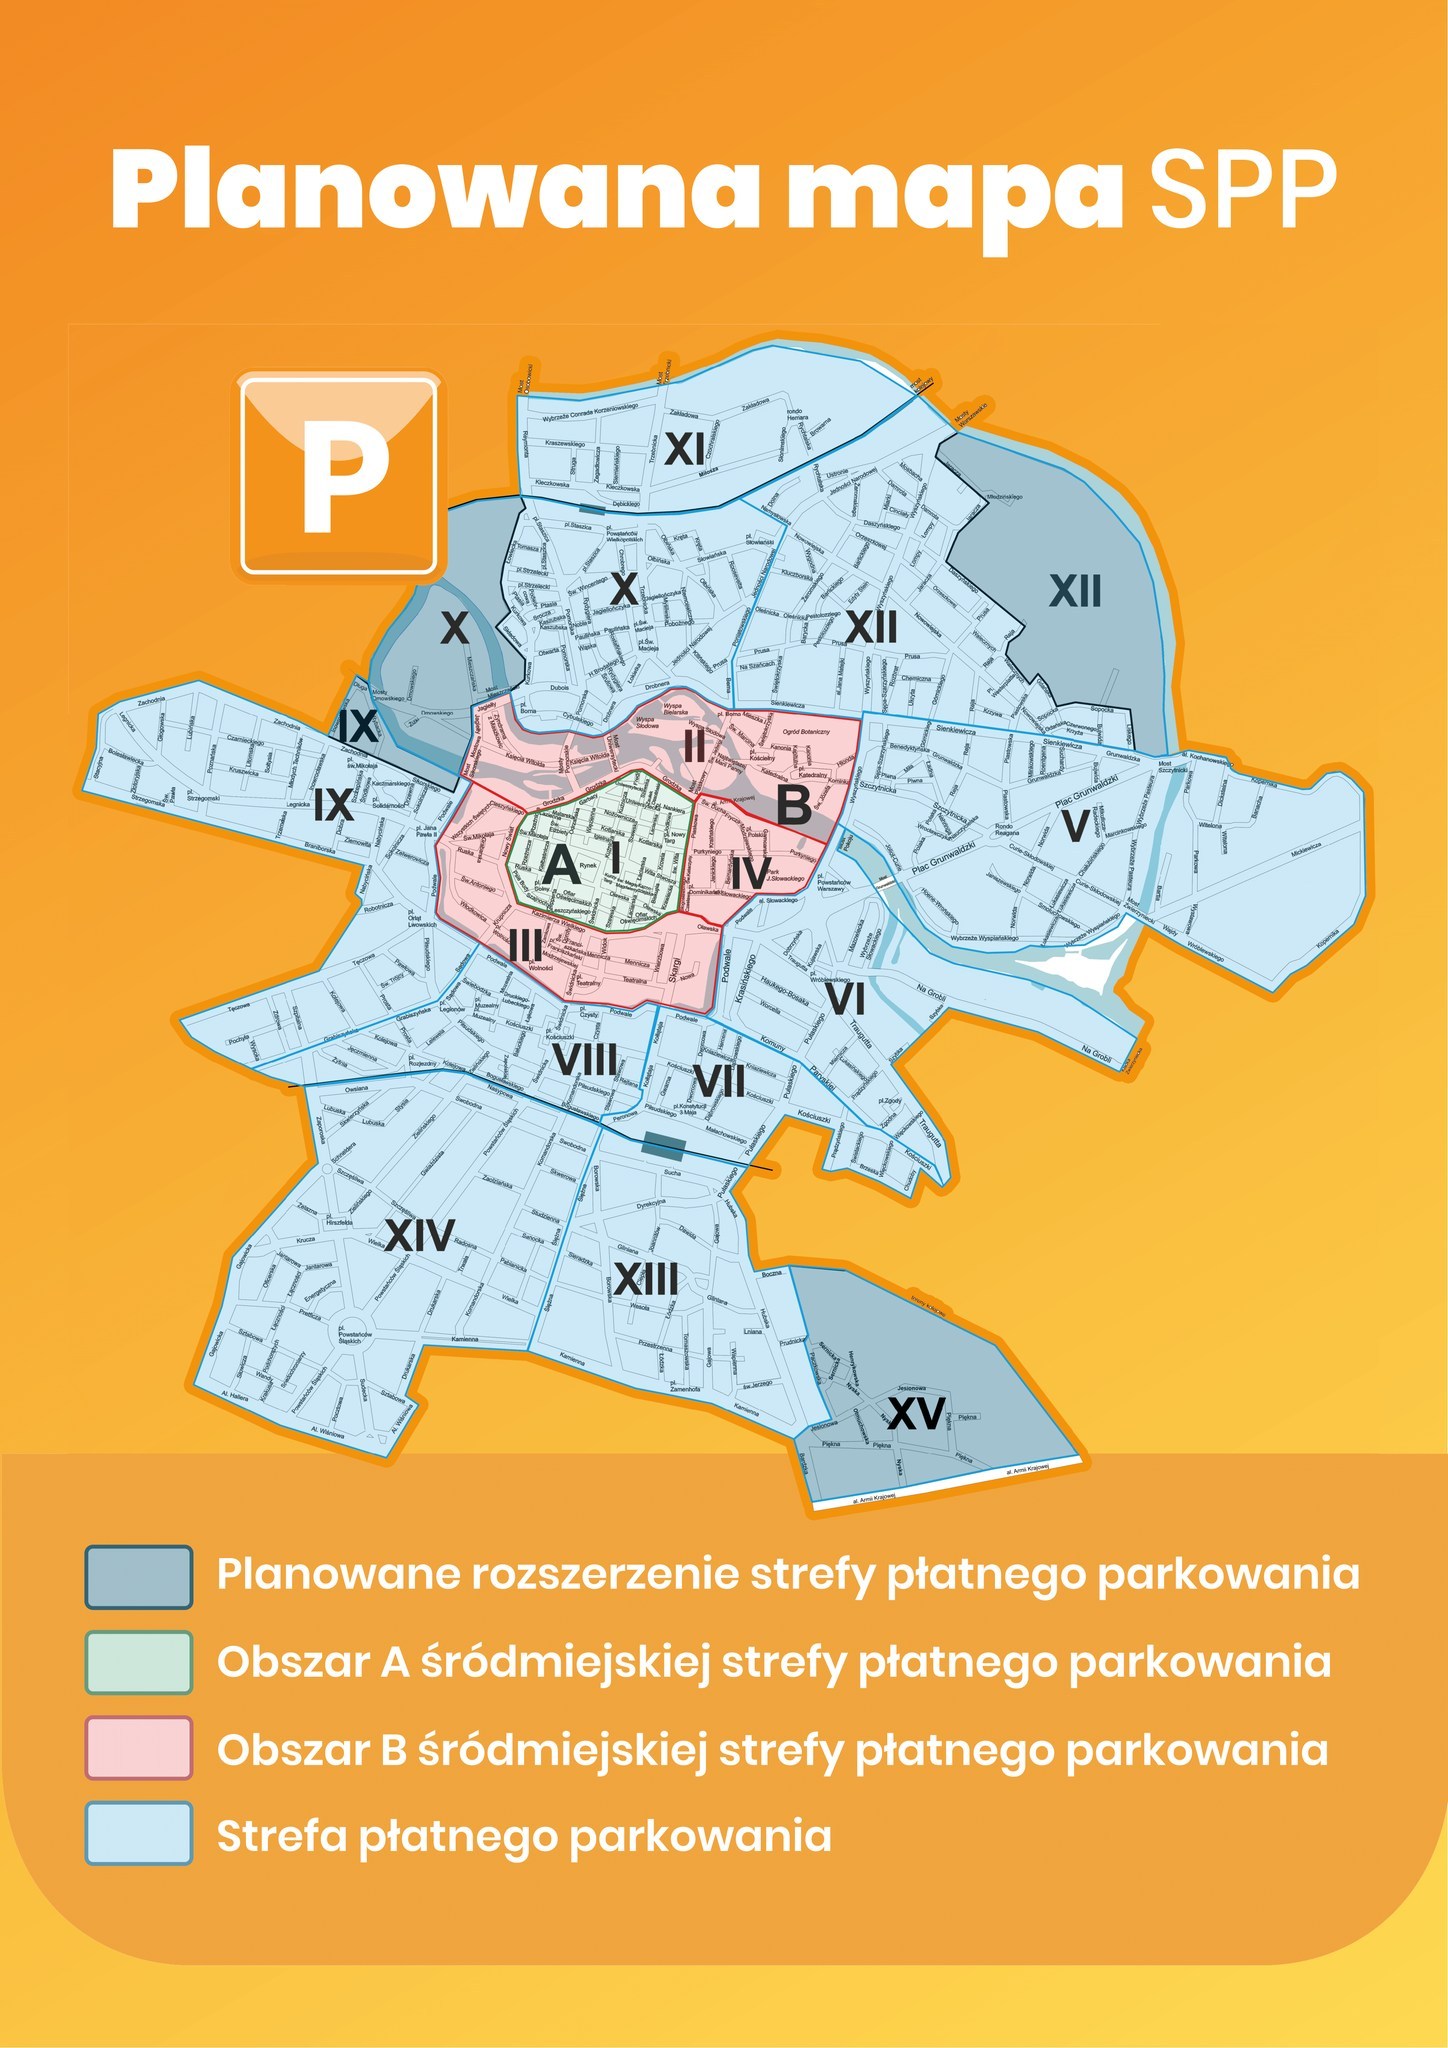 Planowana Strefa Płatnego Parkowania we Wrocławiu